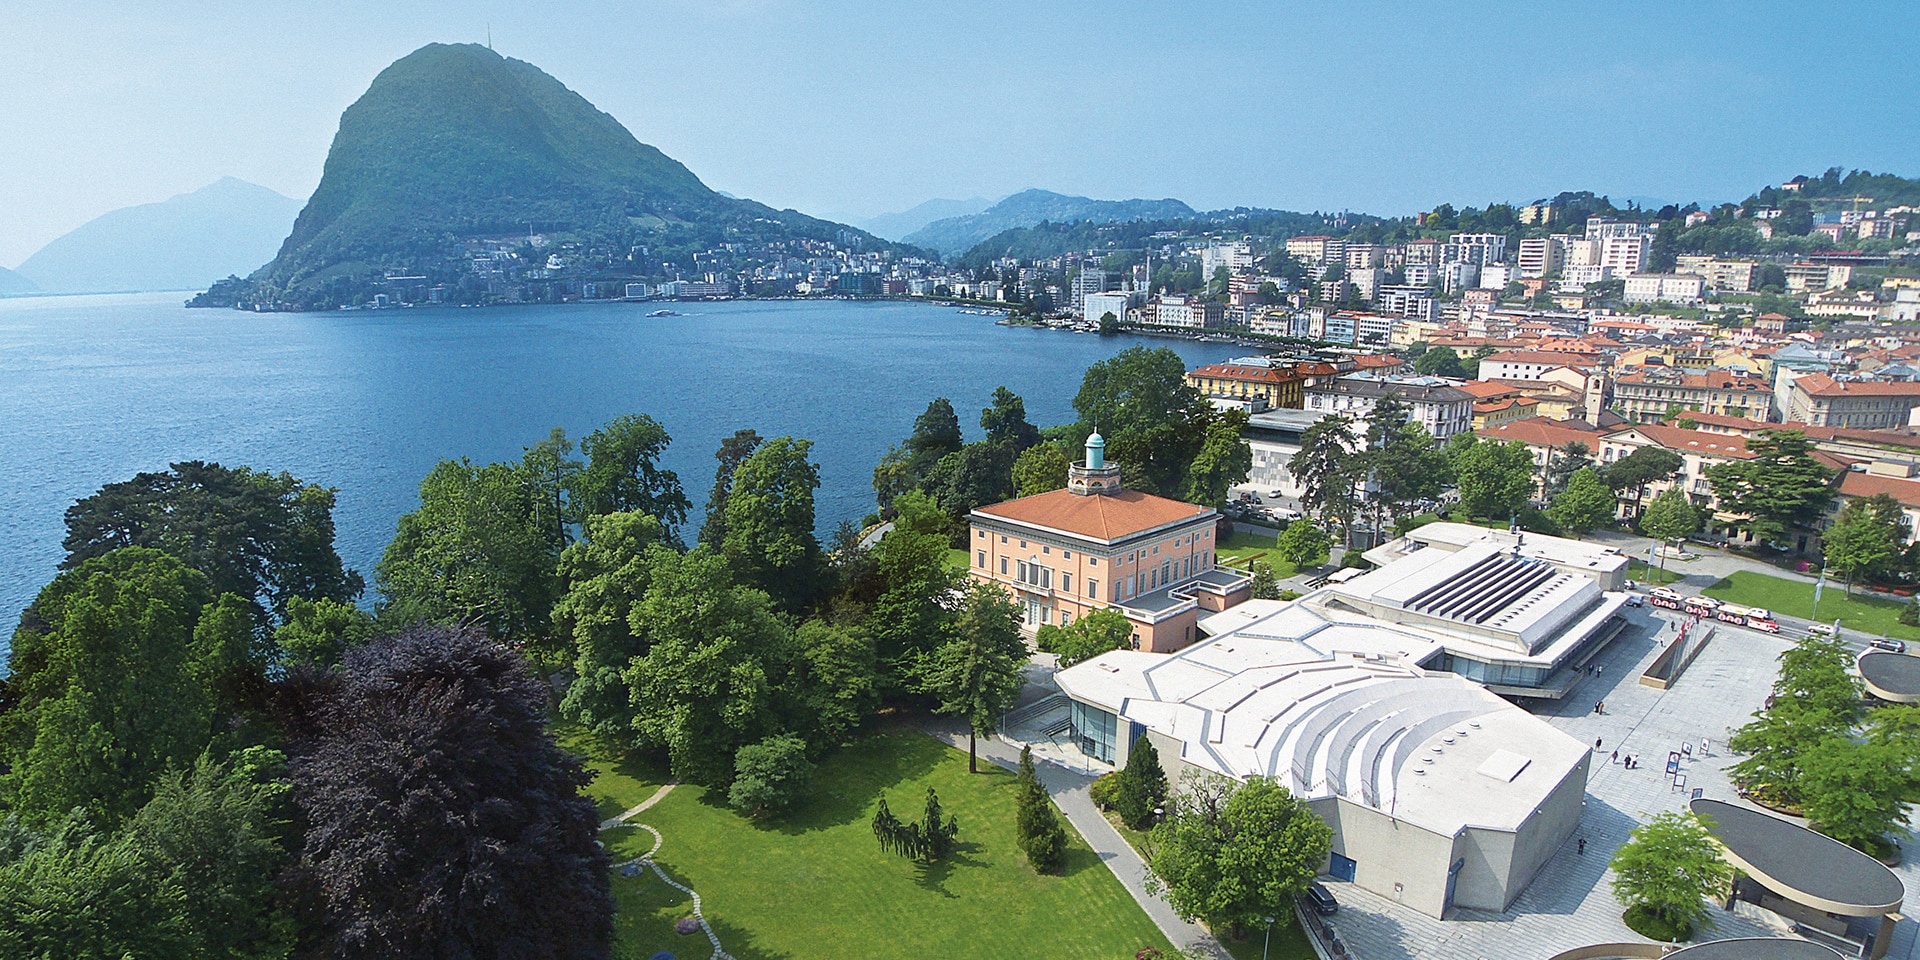 The Palazzo dei Congressi building in Lugano where URC2022 is held